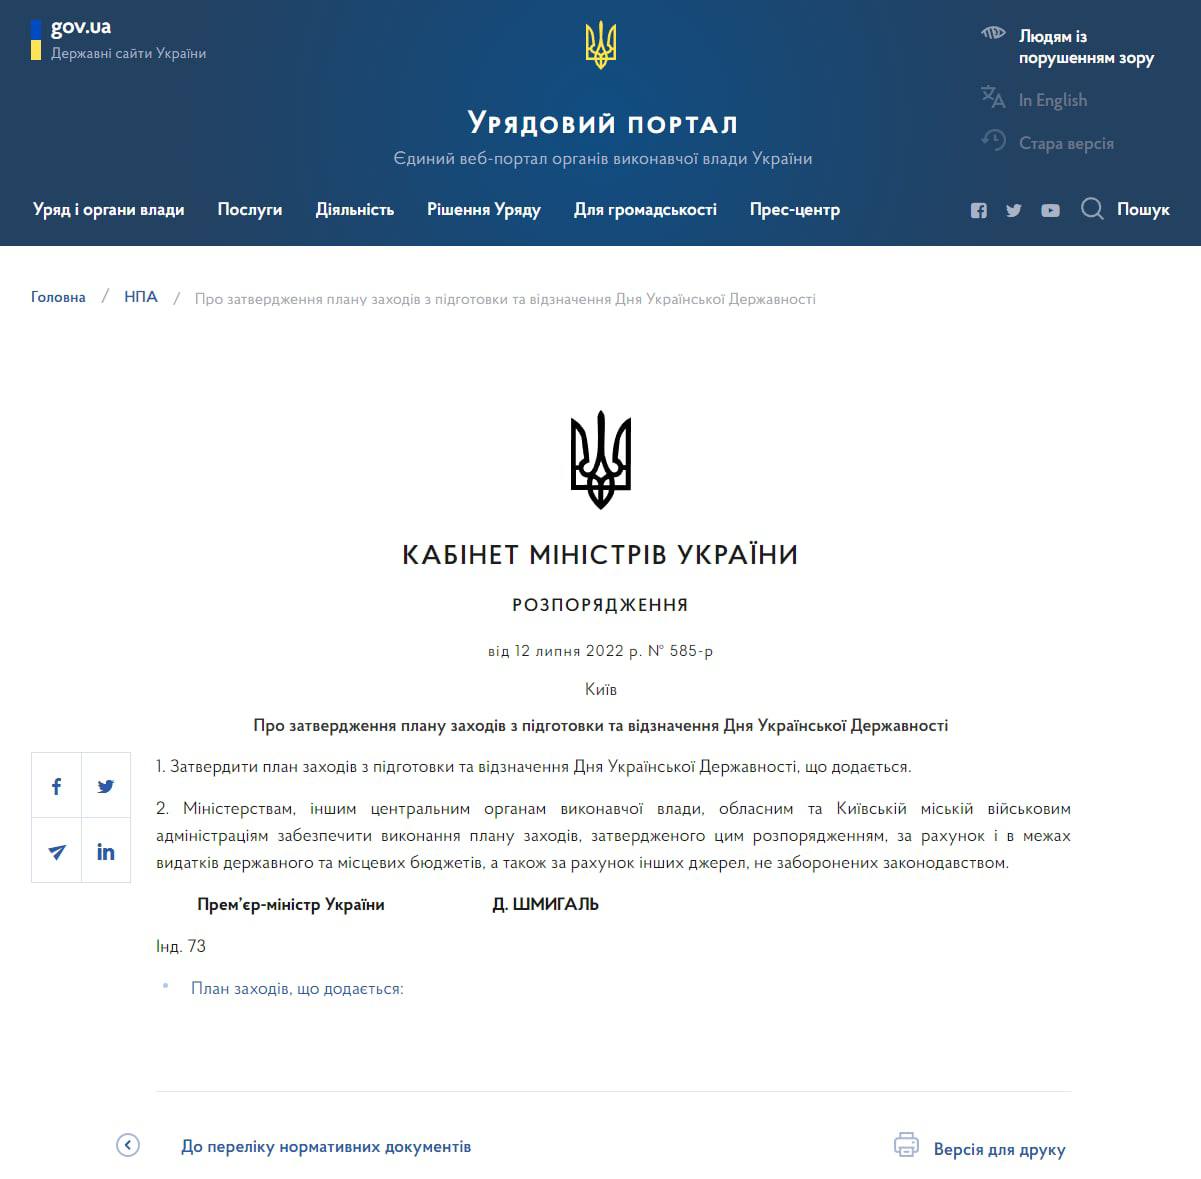 Кабмин намерен ввести экзамен по истории украинской государственности для предоставления гражданства (https://t.me/stranaua/51982) Украины и при приеме на госслужбу